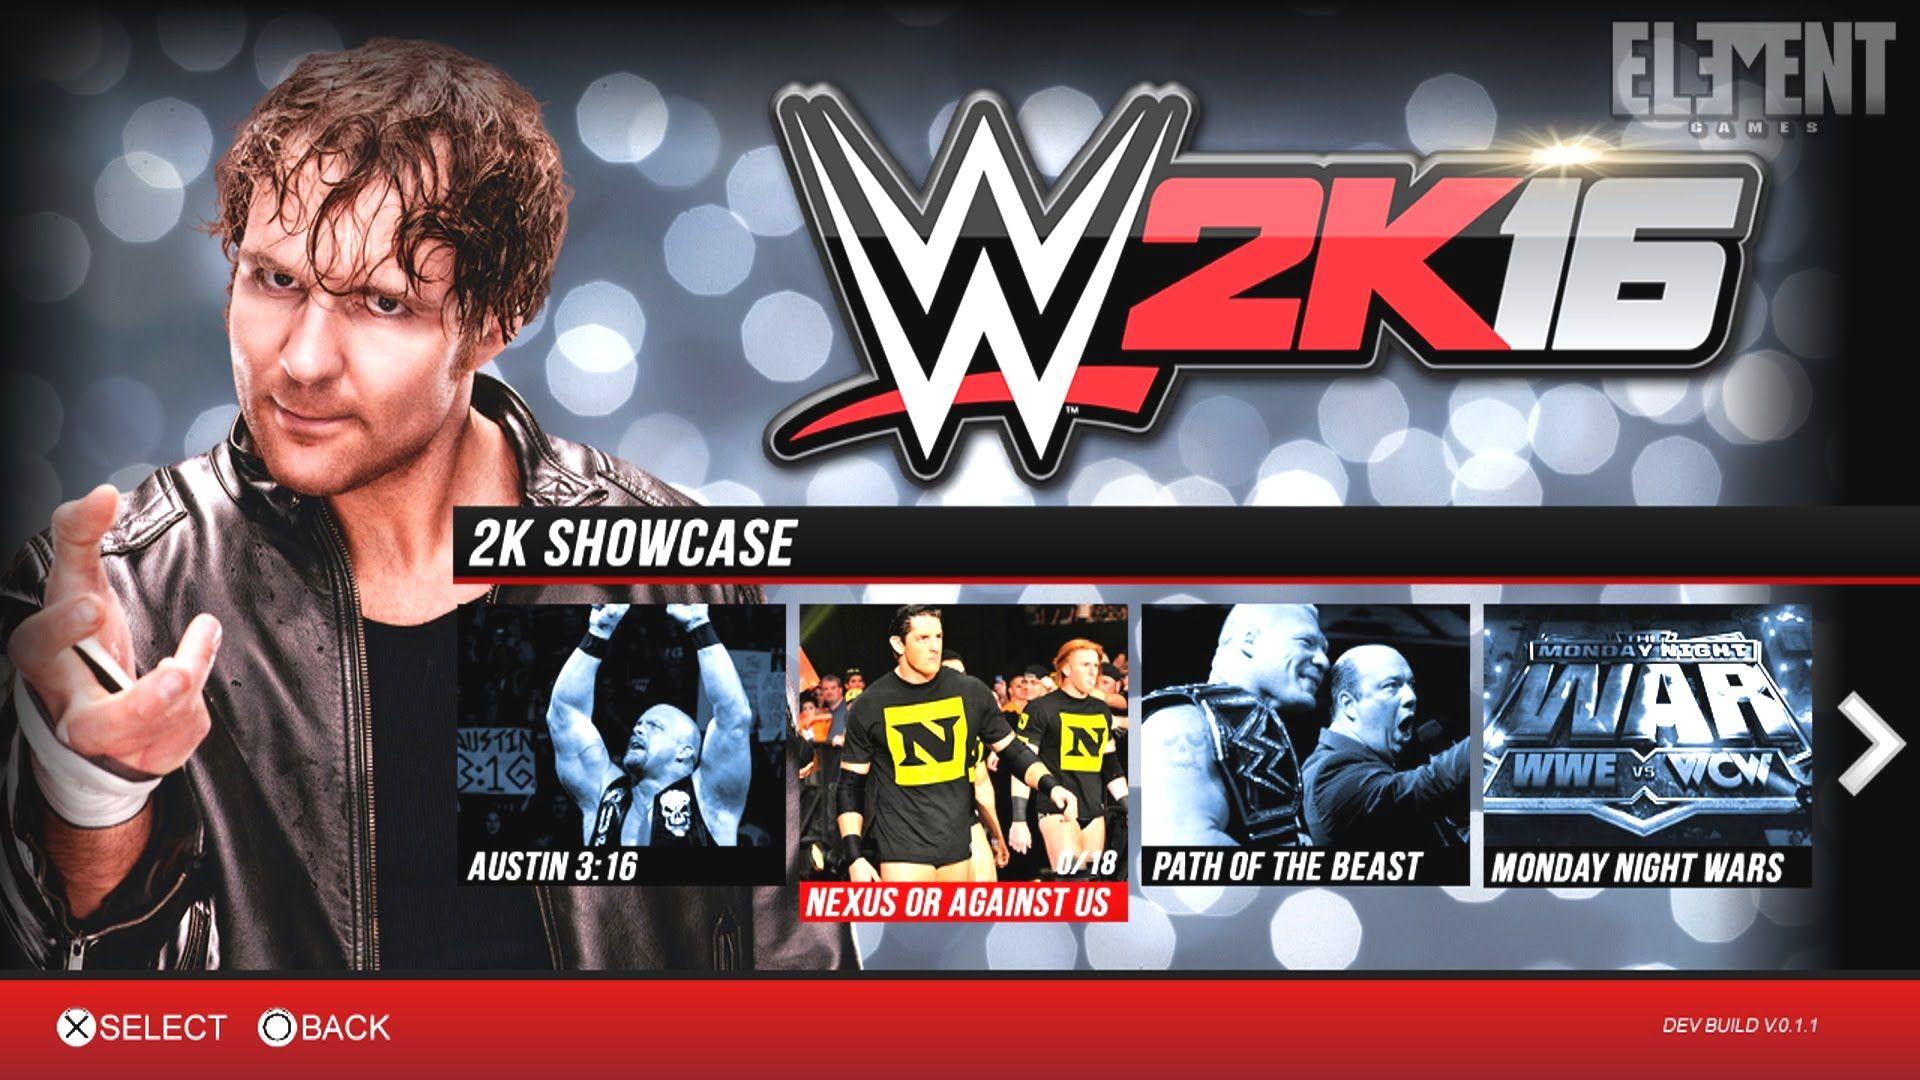 WWE 2K16 2K Showcase or Against us / Path of the Beast WWE